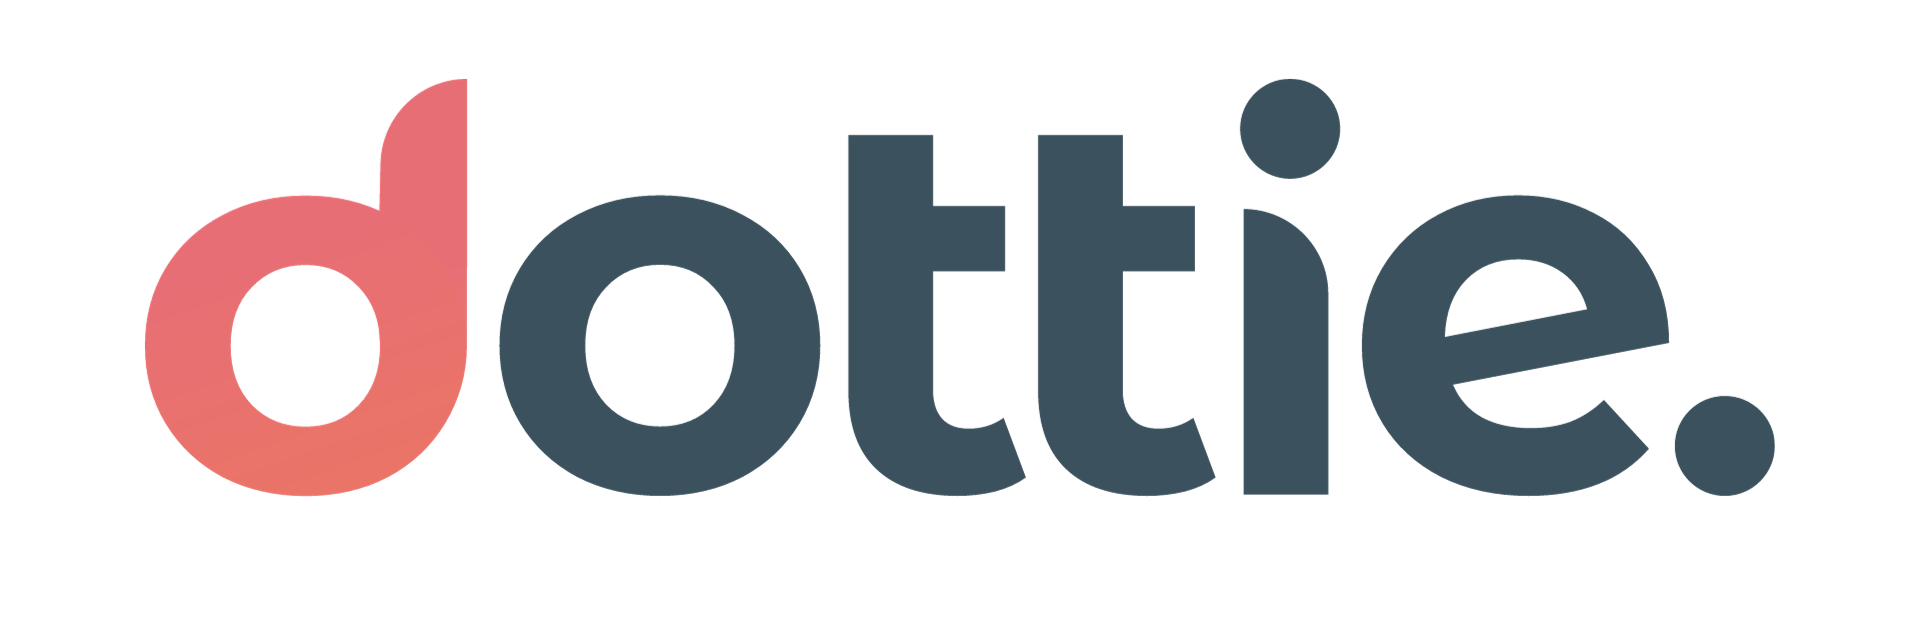 Dottie logo